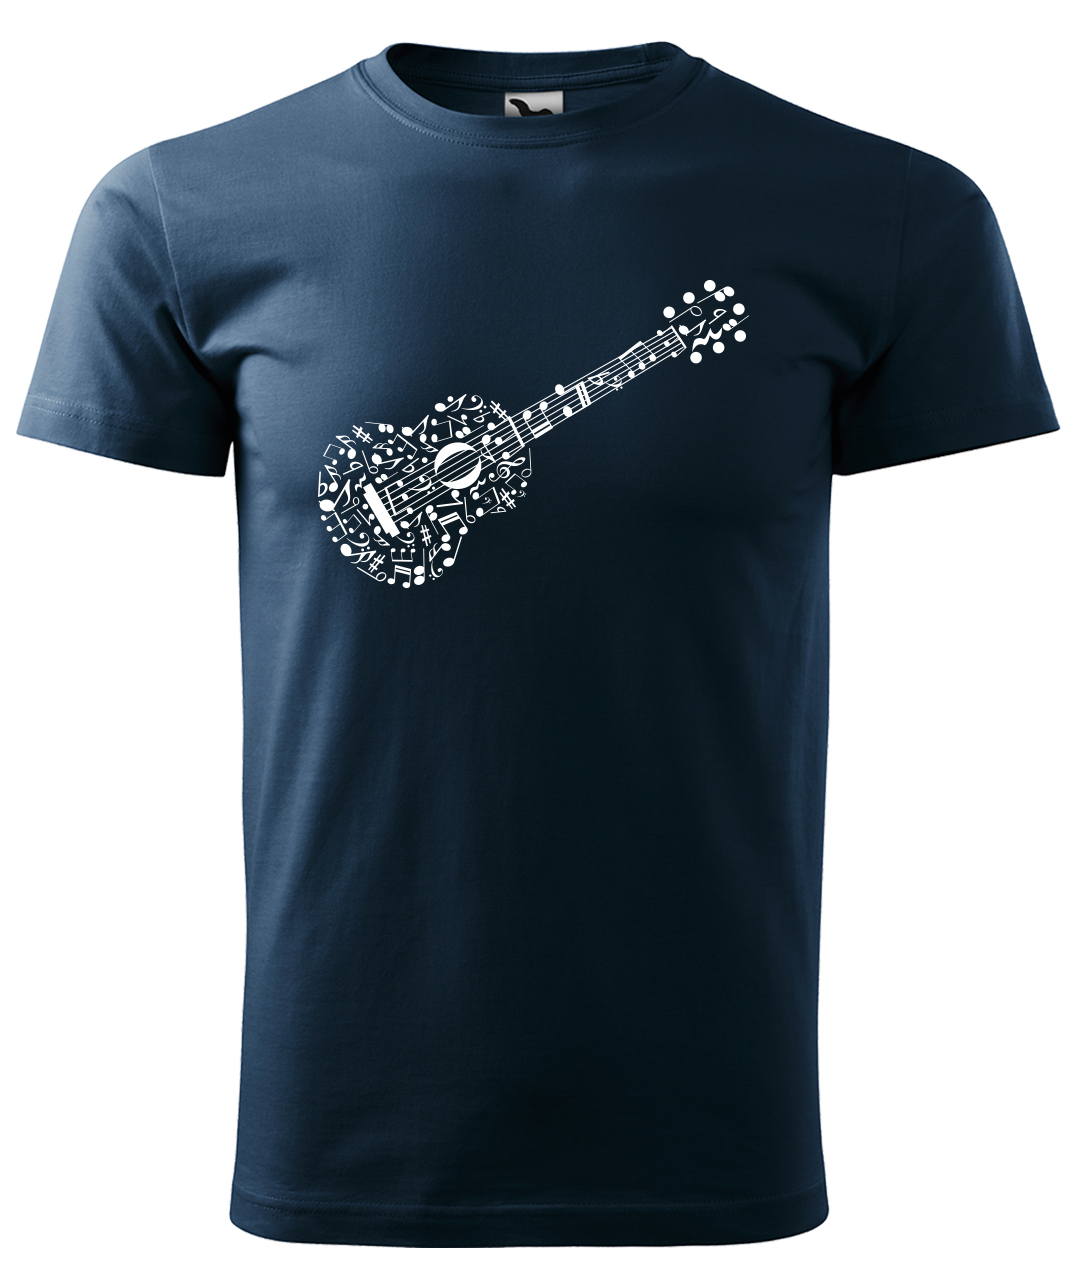 Dětské tričko s kytarou - Kytara z not Velikost: 6 let / 122 cm, Barva: Námořní modrá (02), Délka rukávu: Krátký rukáv